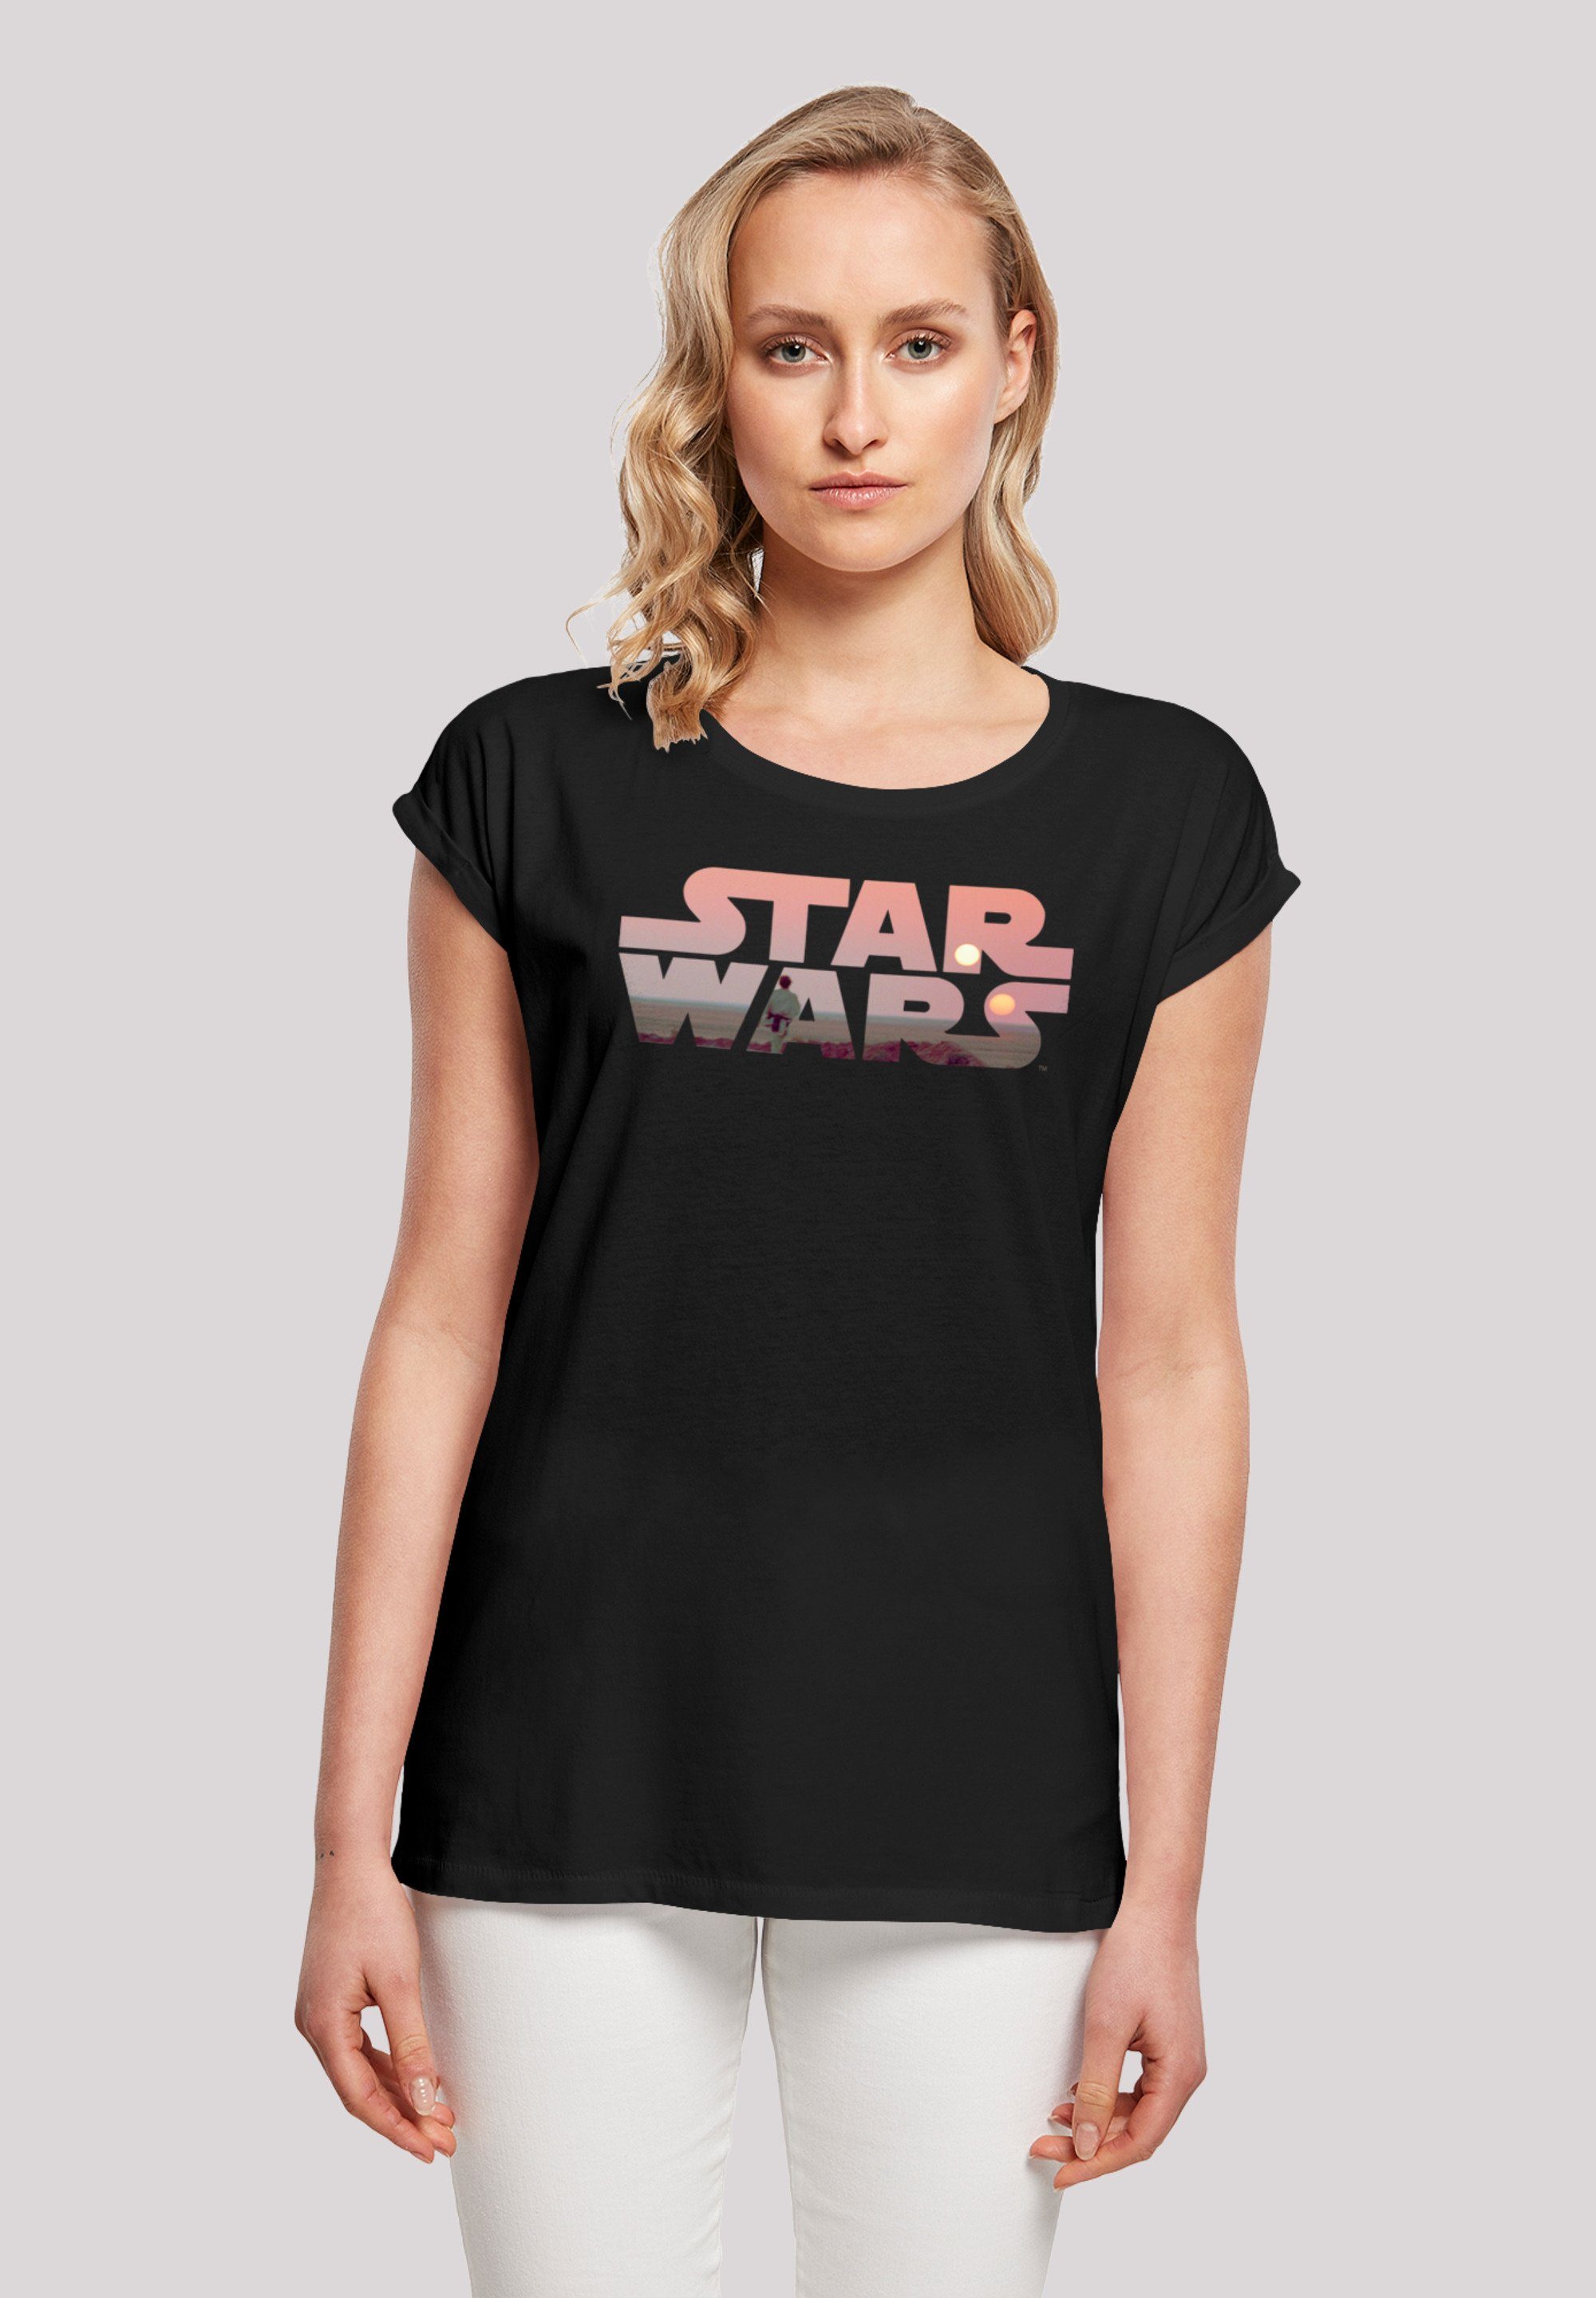 F4NT4STIC T-Shirt lizenziertes Wars T-Shirt Offiziell Logo Star Wars Print, Tatooine Star